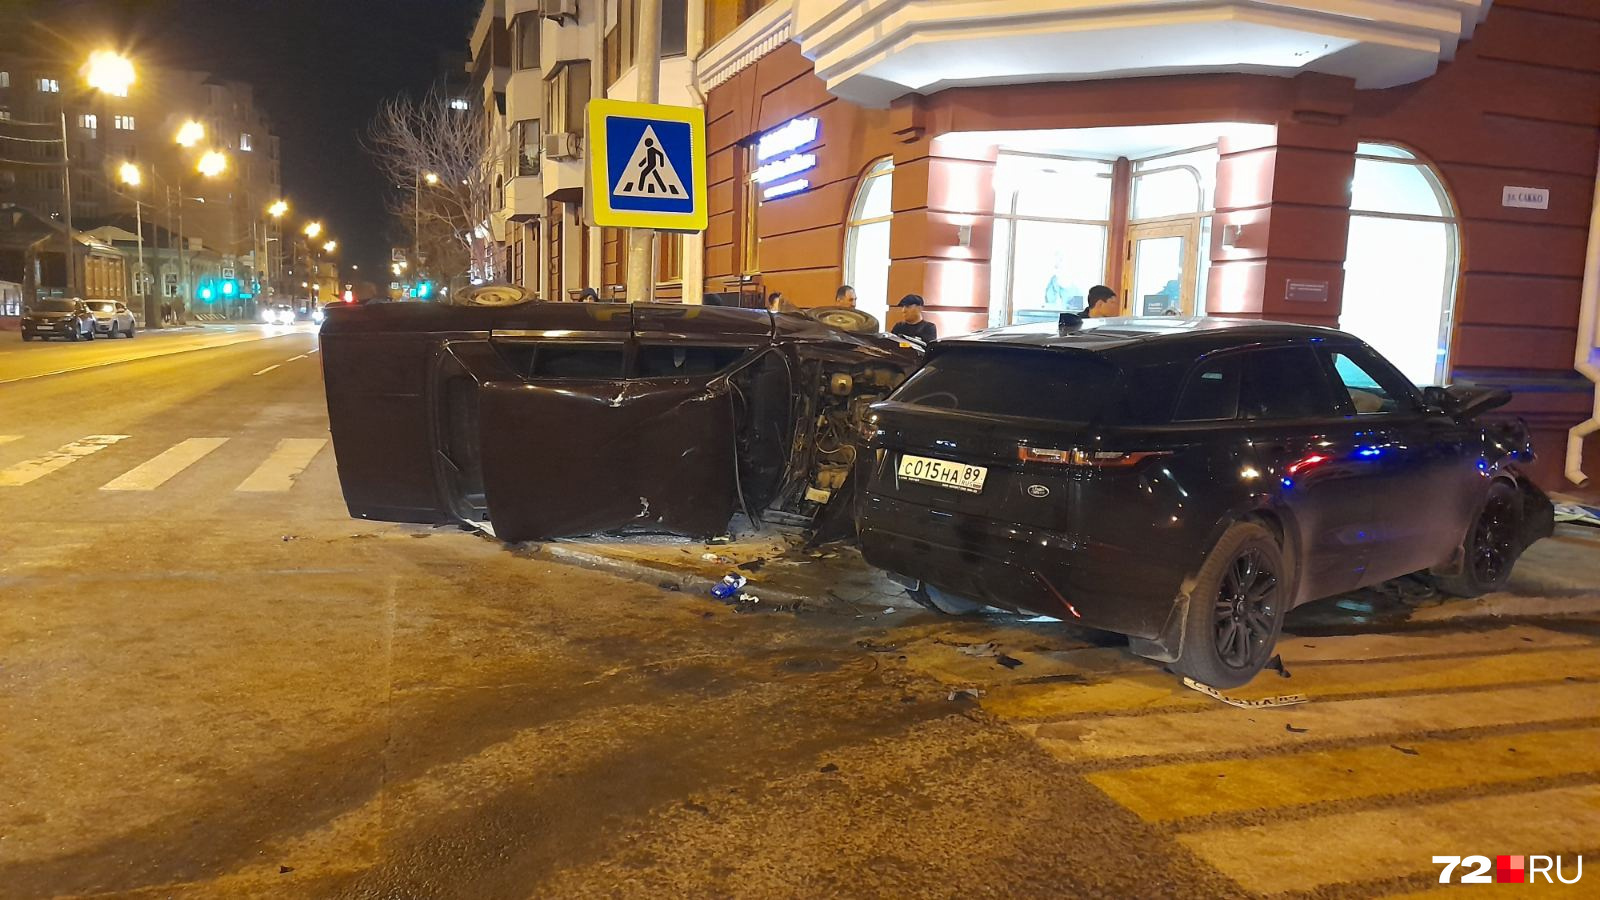 Машина российского производства после столкновения перевернулась на крышу